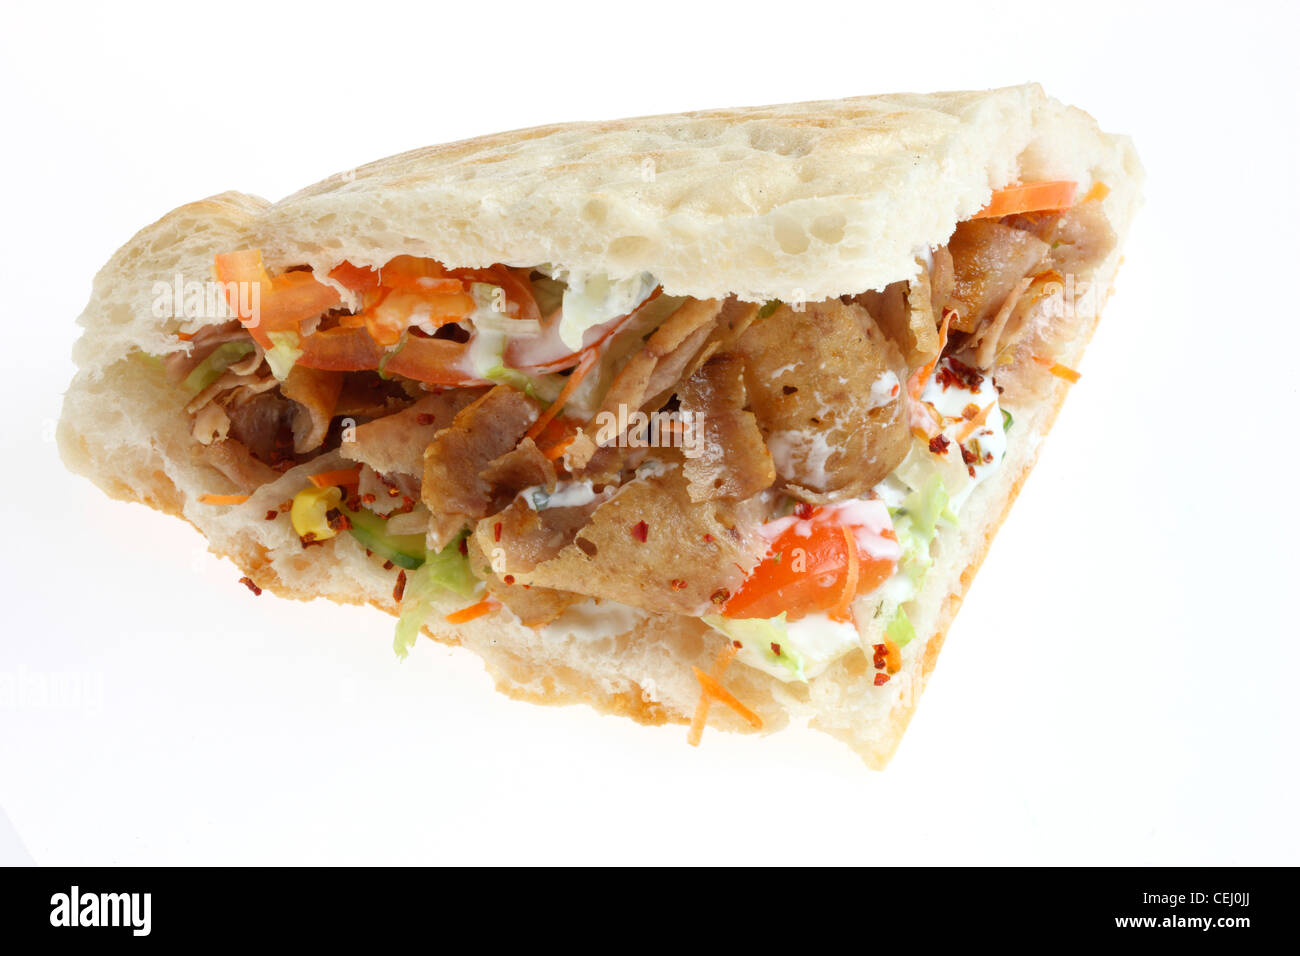 Ernährung, Fast-Food. Türkischen Döner Kebab. Lampe, Rindfleisch oder Huhn Fleisch, Salat, Knoblauchsauce, Grube Brot in dünne Scheiben geschnitten. Stockfoto